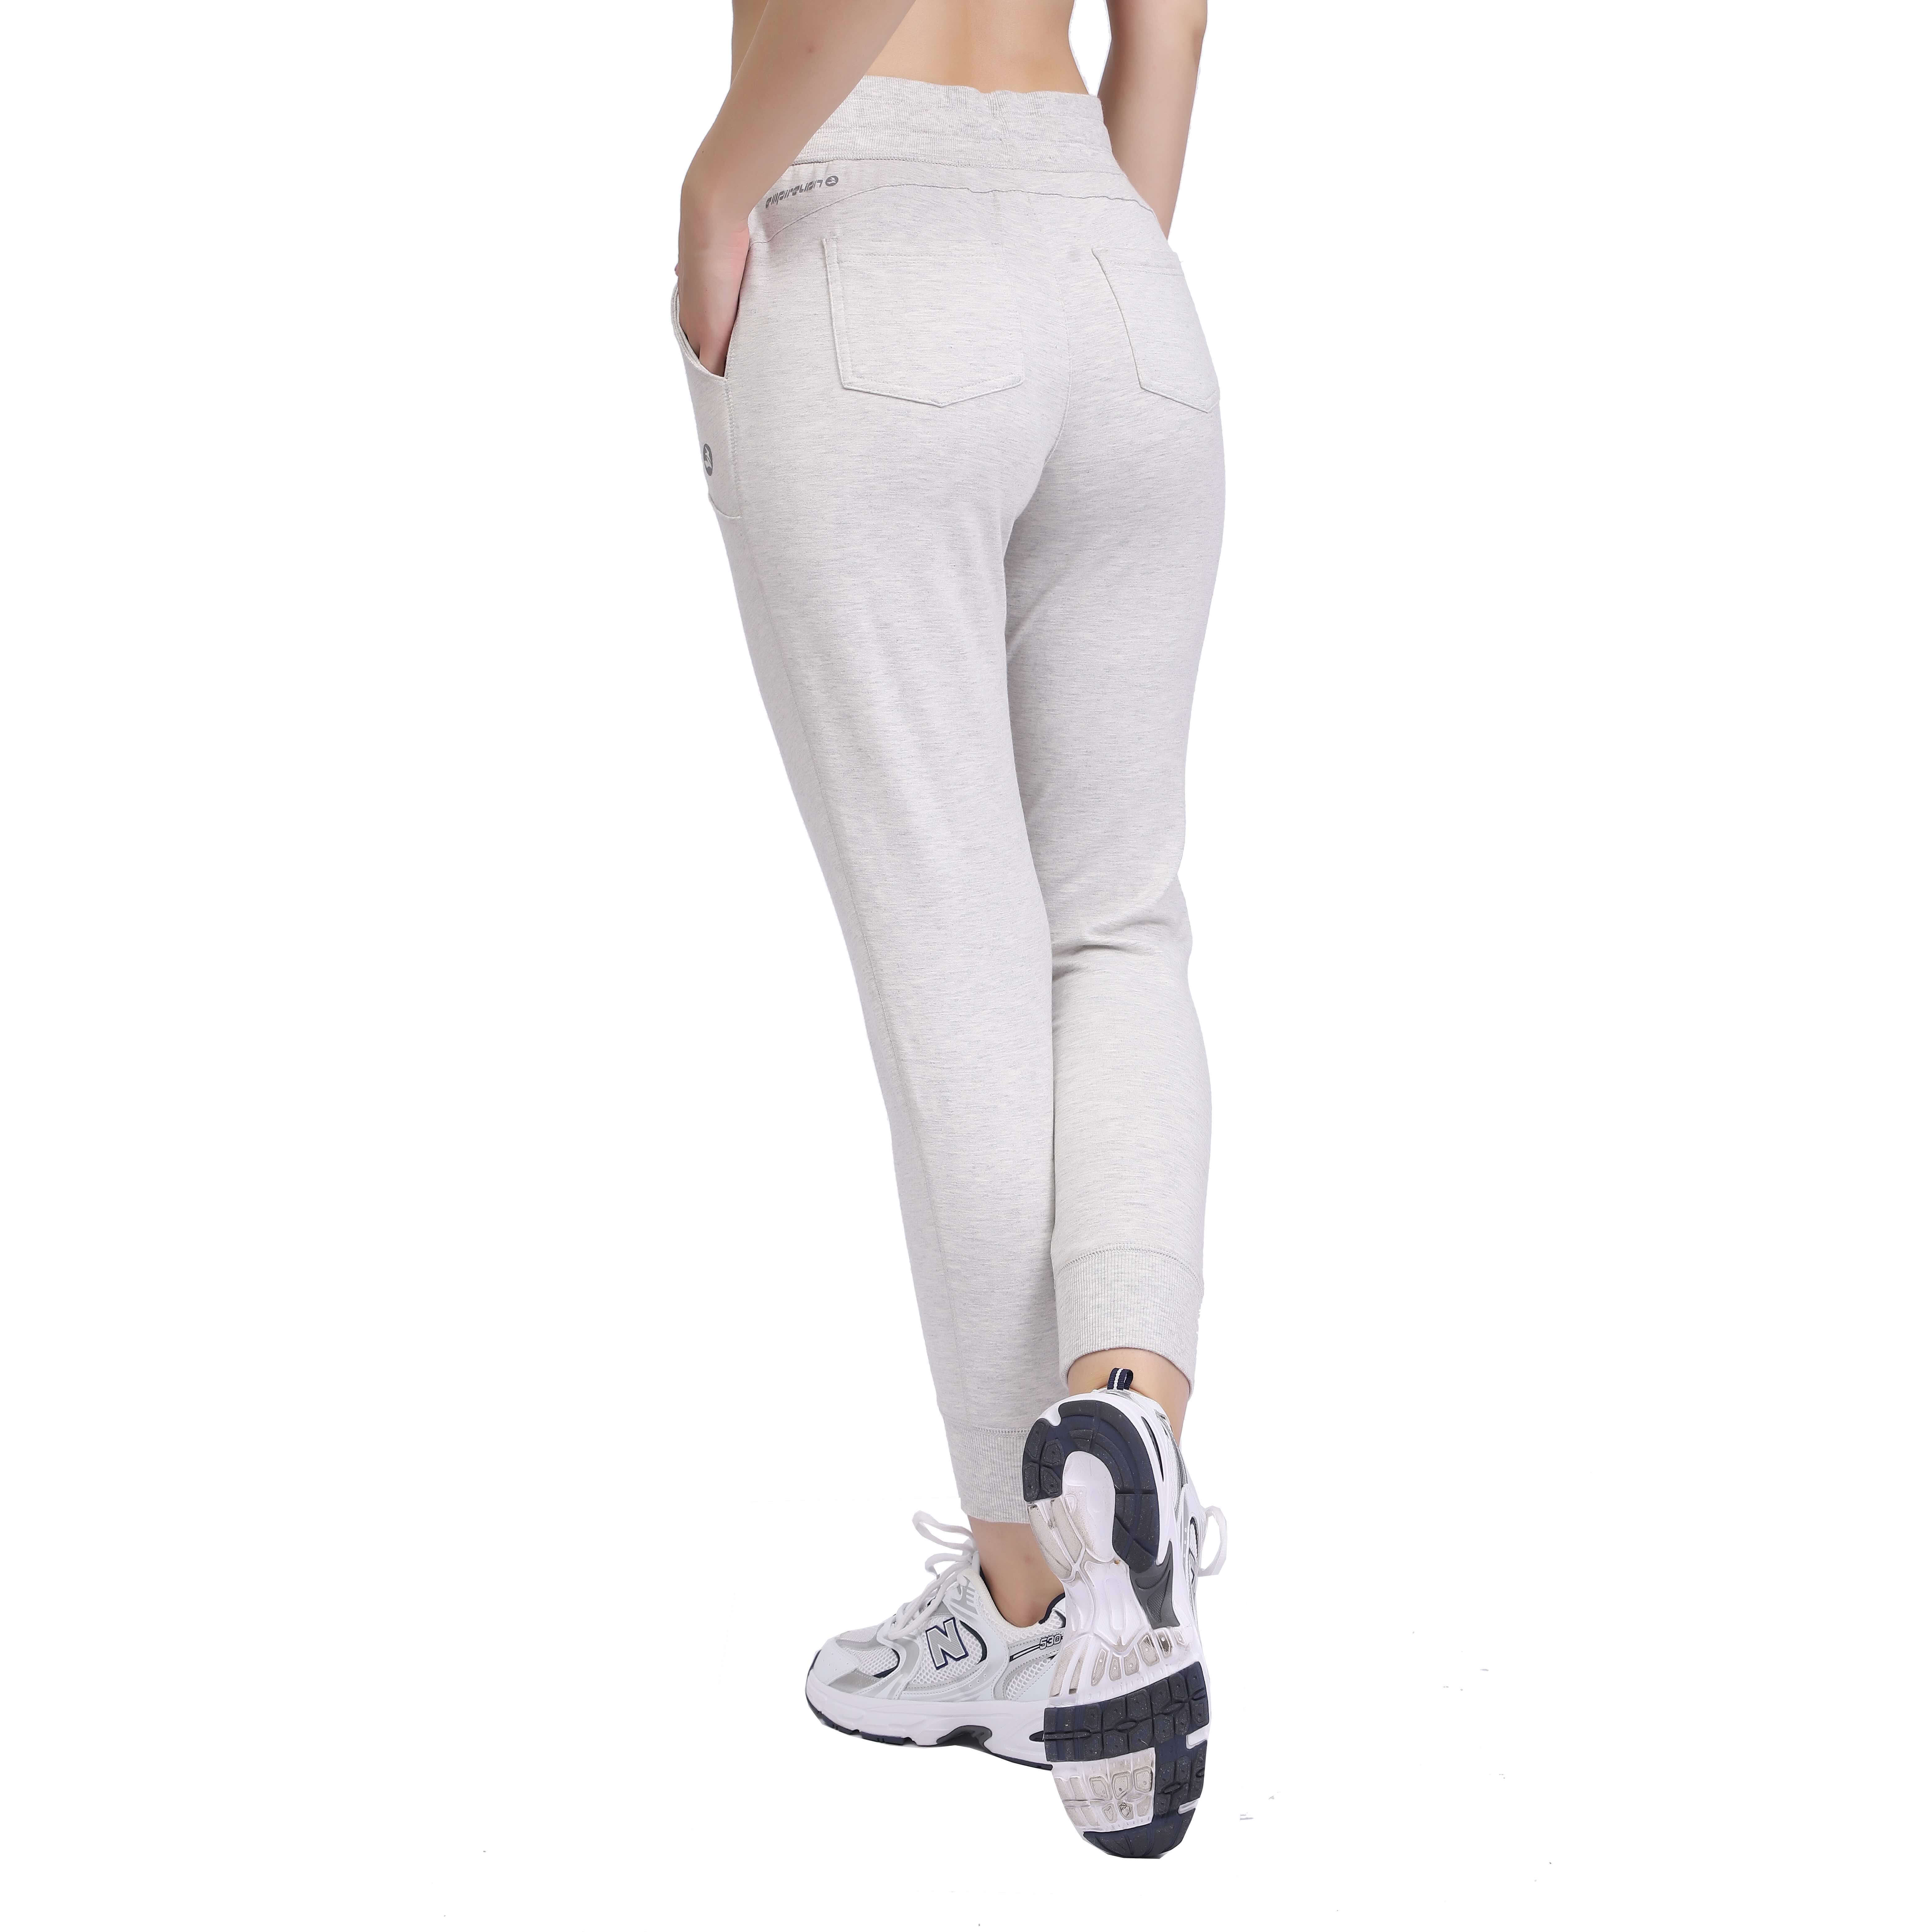 Pantalones deportivos deportivos para mujer Pantalones deportivos con cordones y bolsillos